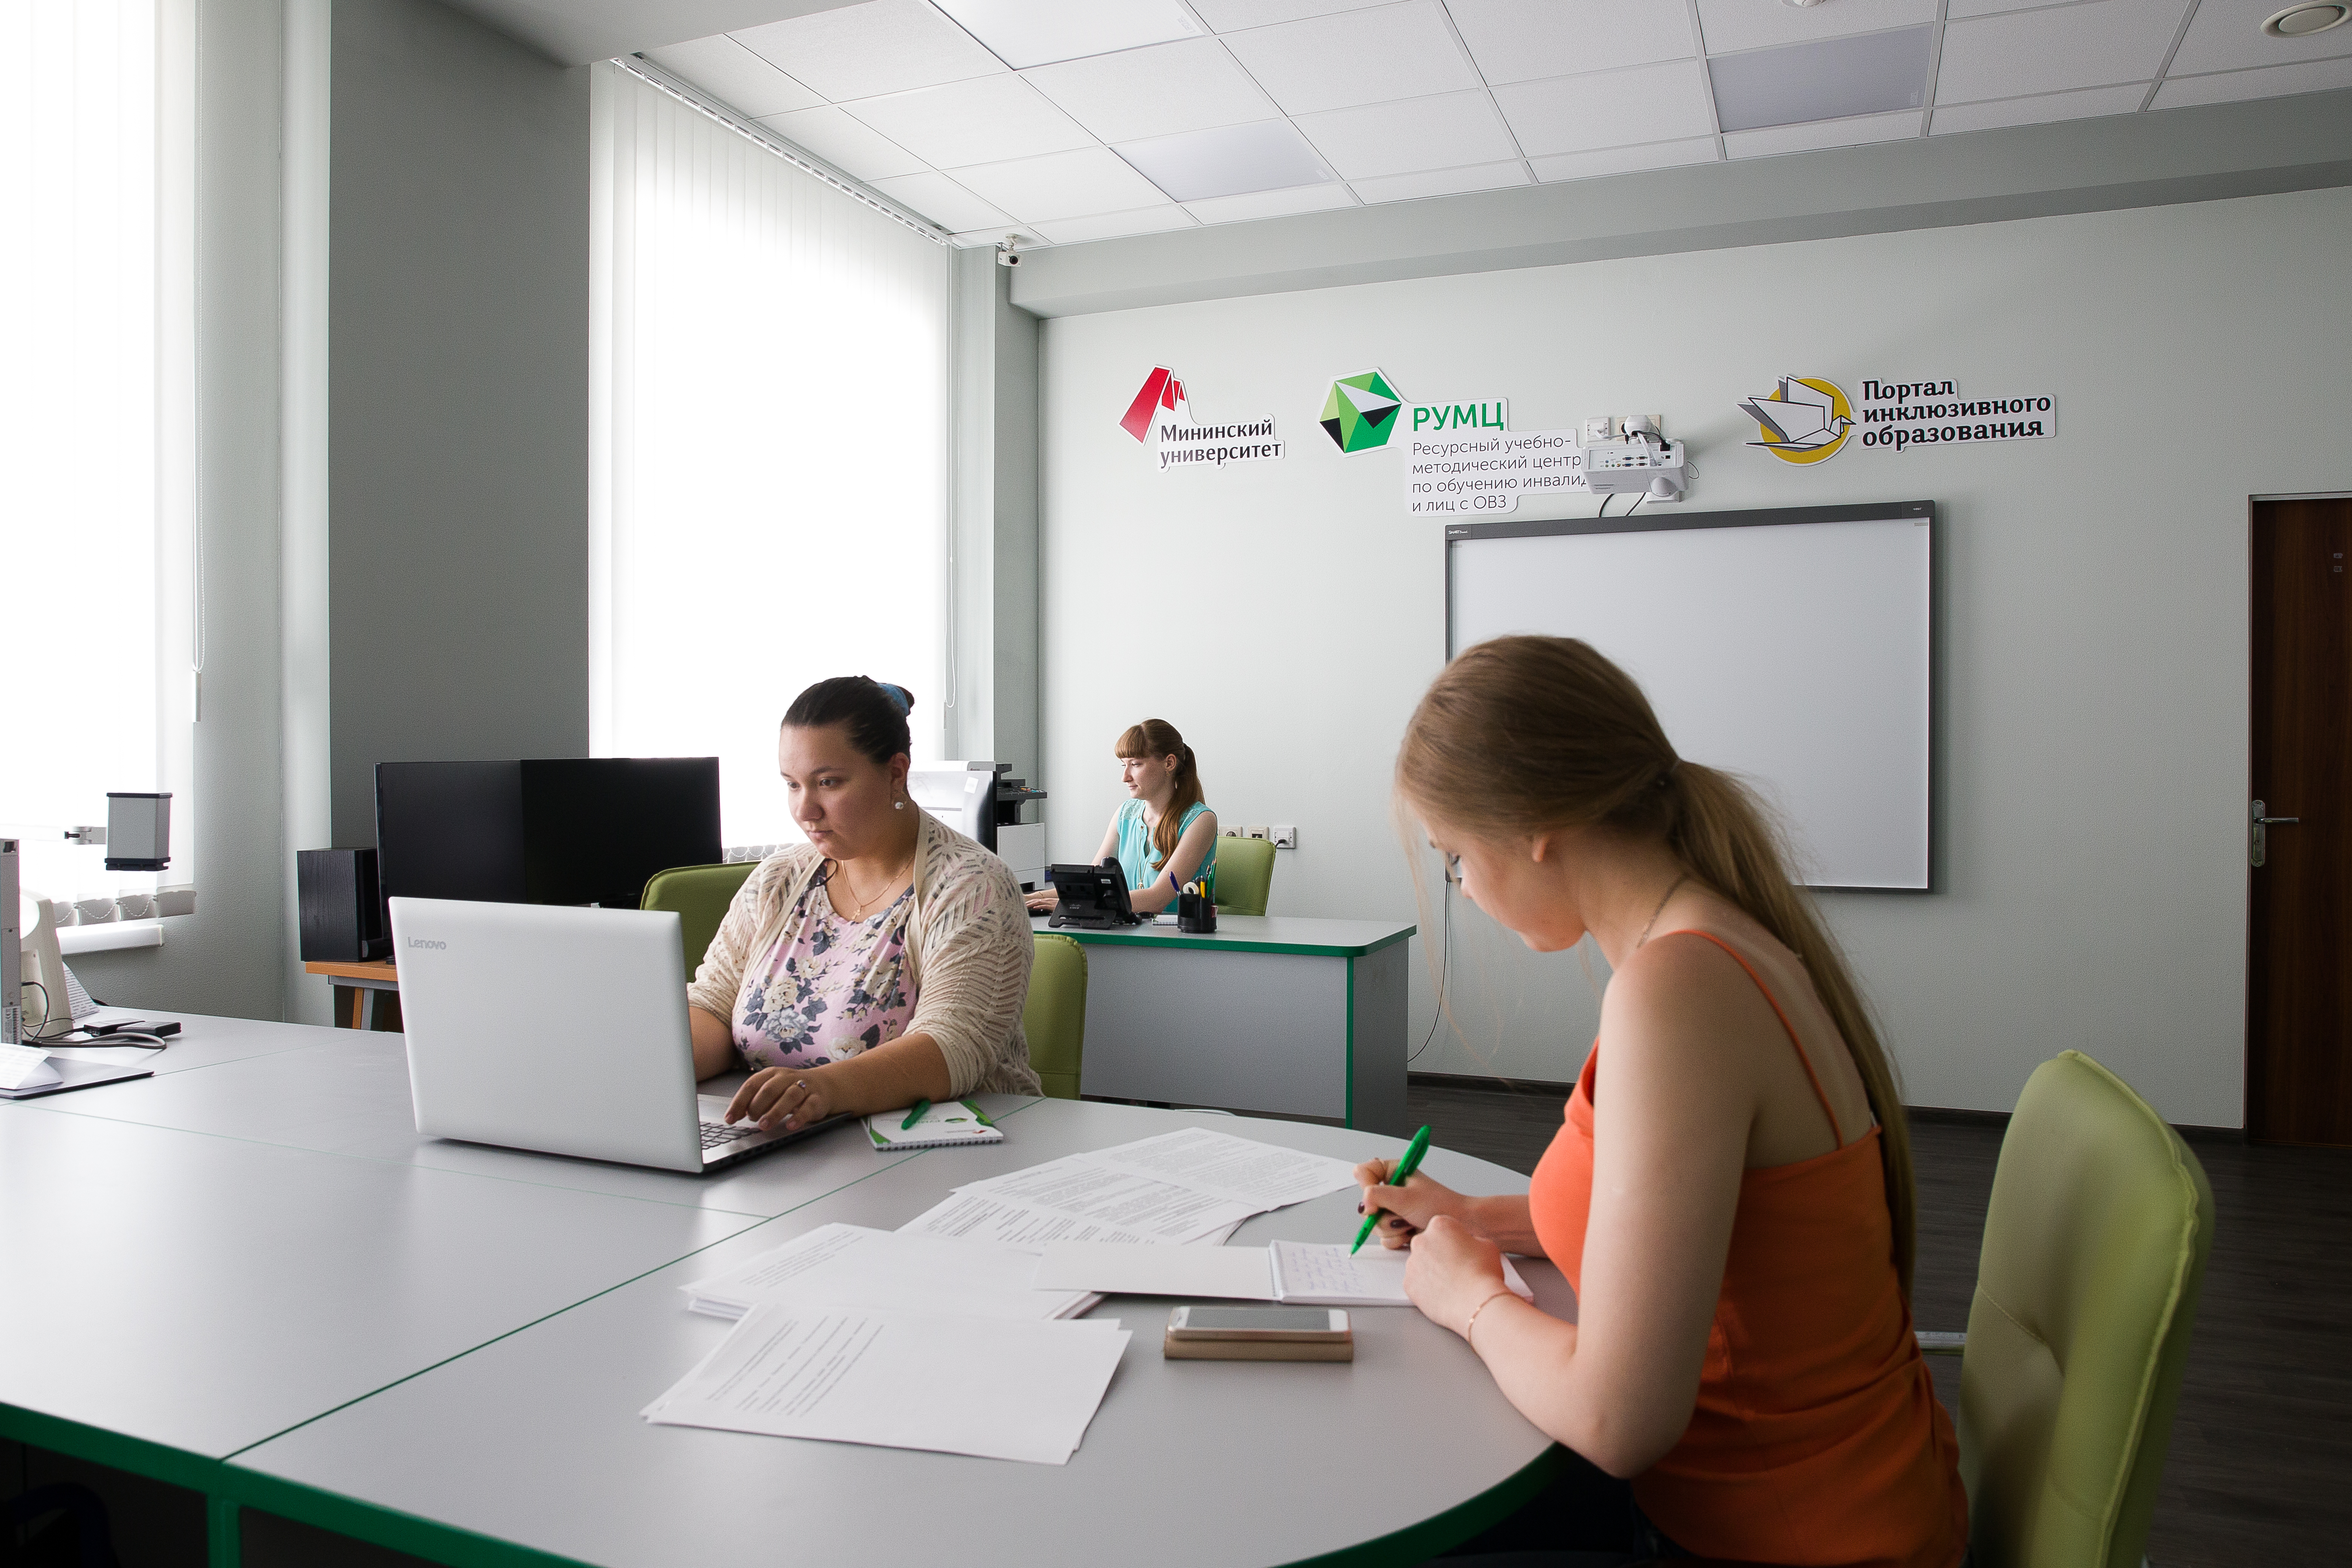 Международный день благотворительности Мининский университет отметит серией мастер-классов для детей из школ-интернатов